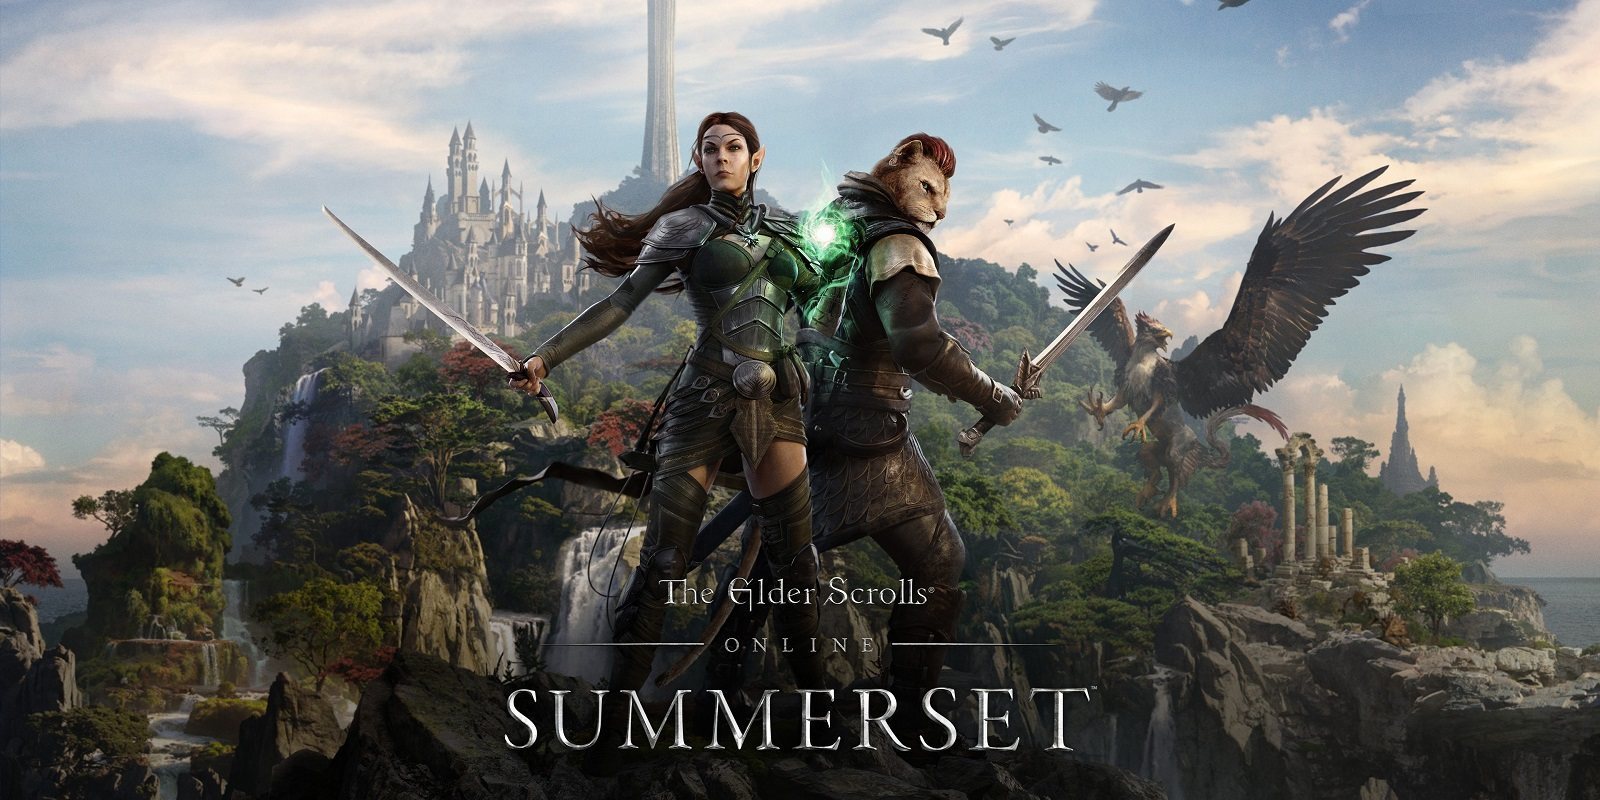 Análisis de 'The Elder Scrolls Online: Summerset' para PS4. Vacaciones en la isla